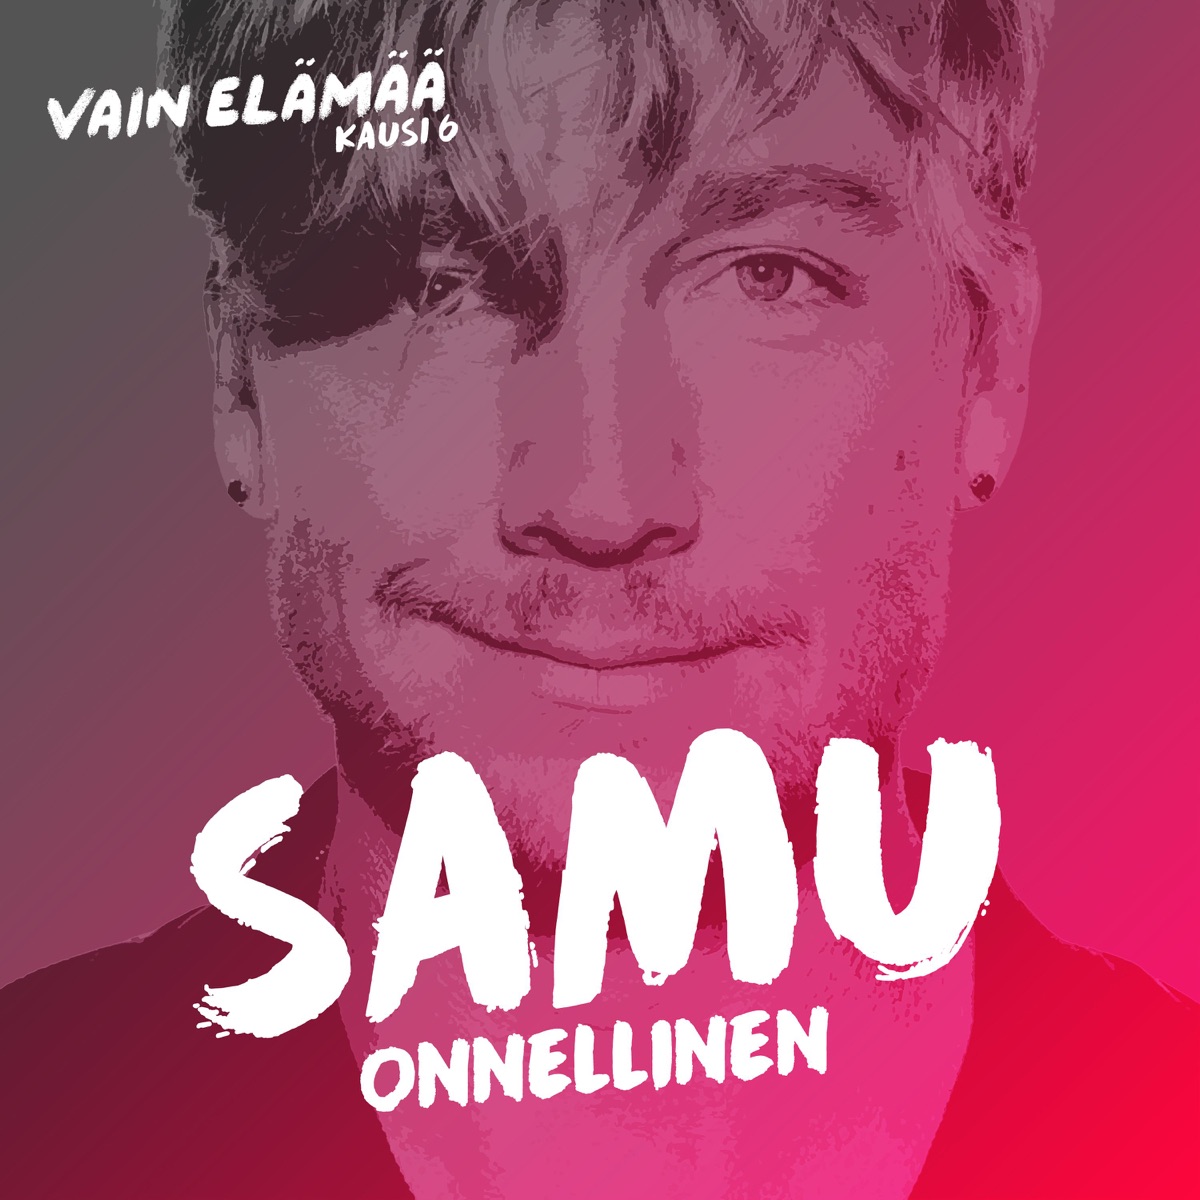 Ikuinen vappu (Vain elämää kausi 10) - Single by Samu Haber on Apple Music